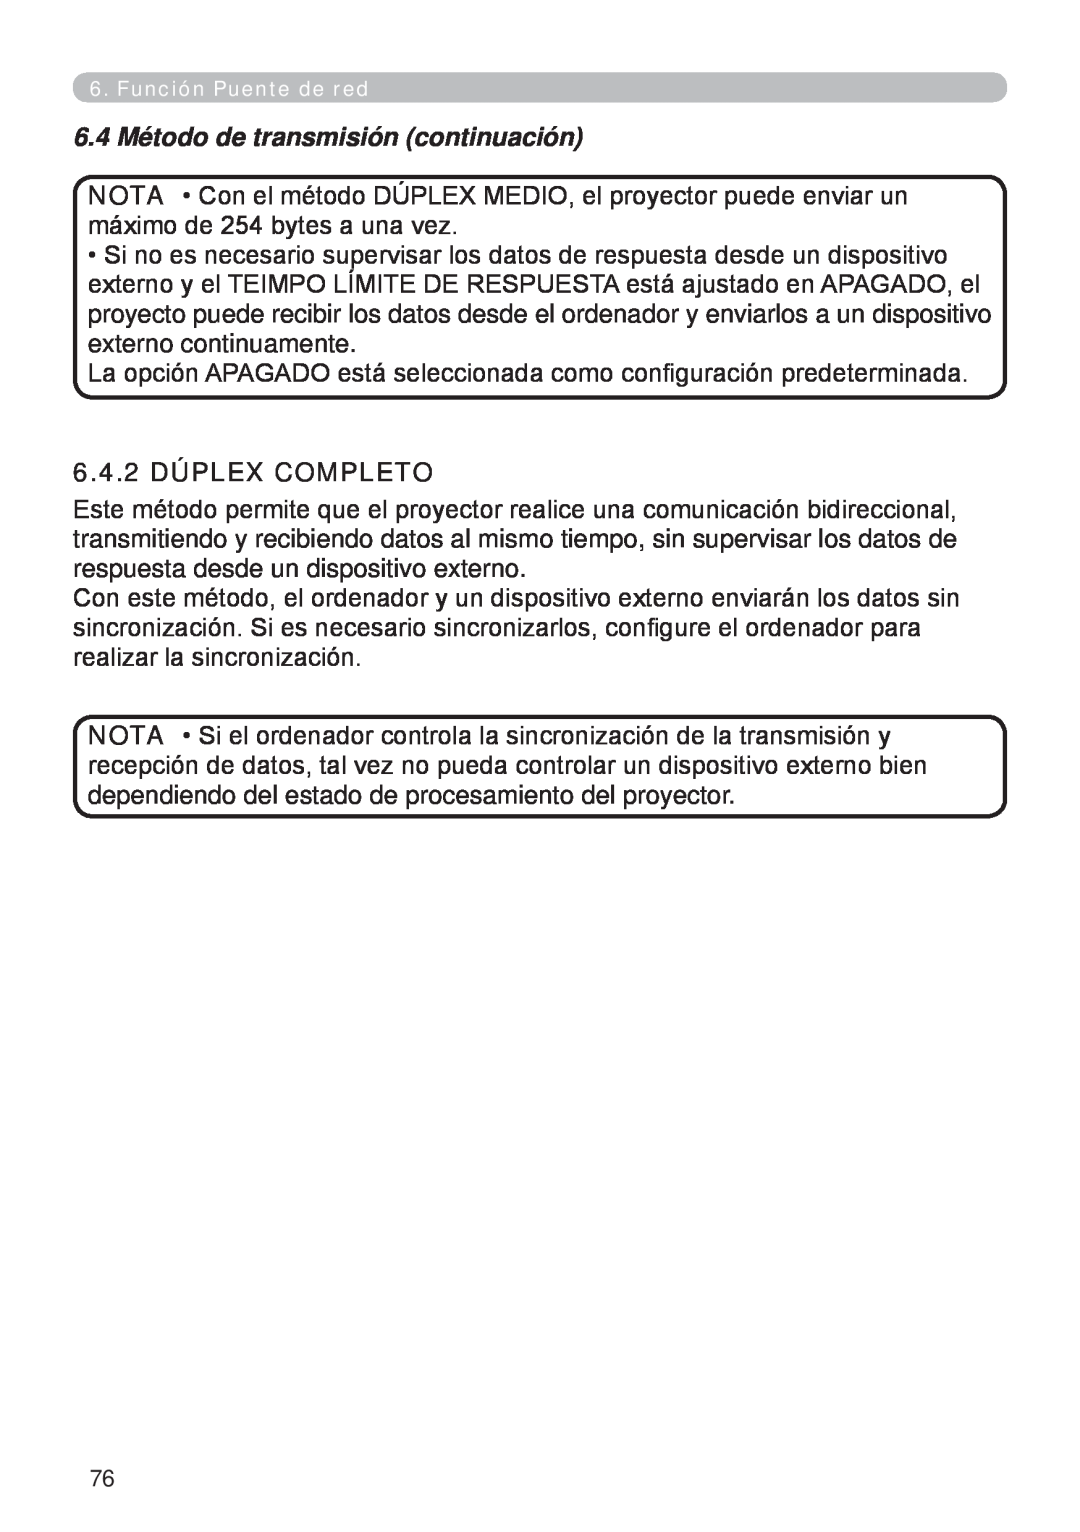 InFocus W61, W60 manual 6.4 Método de transmisión continuación, 6.4.2 DÚPLEX COMPLETO 